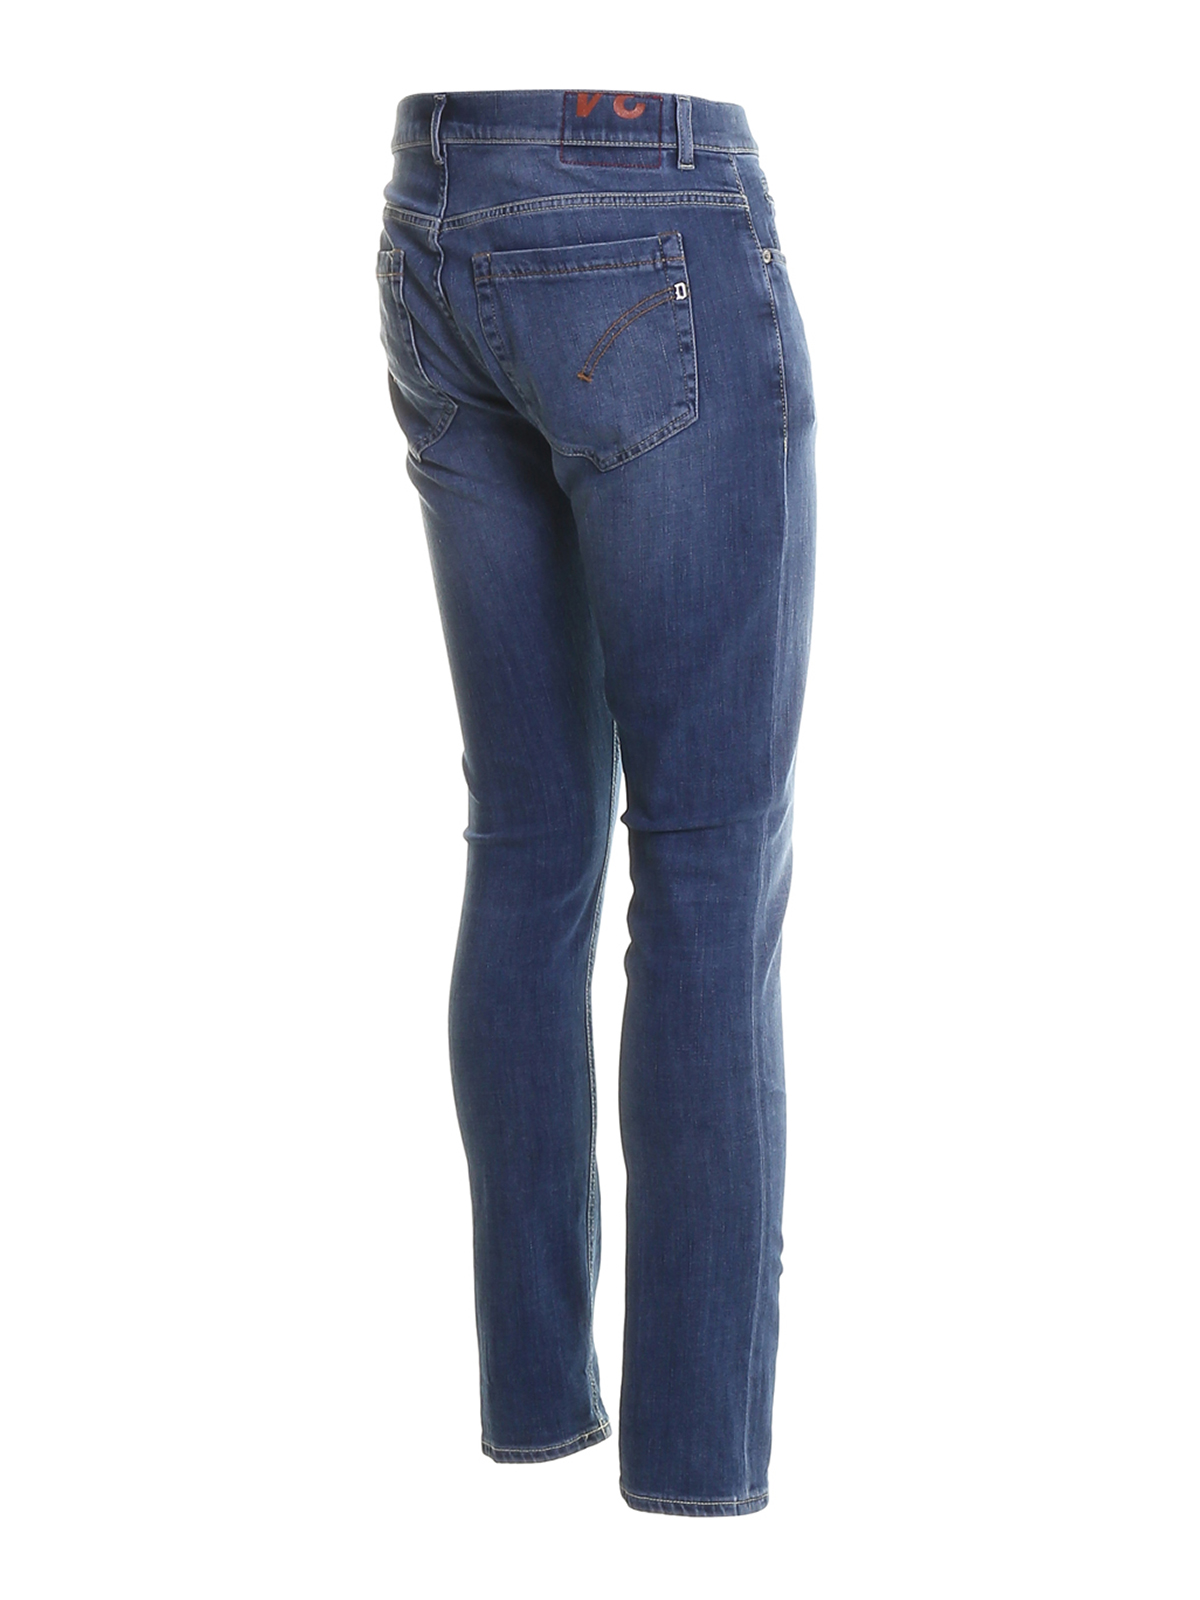 Skinny jeans Dondup - George denim jeans - UP232DS0268UAB5800 | iKRIX.com